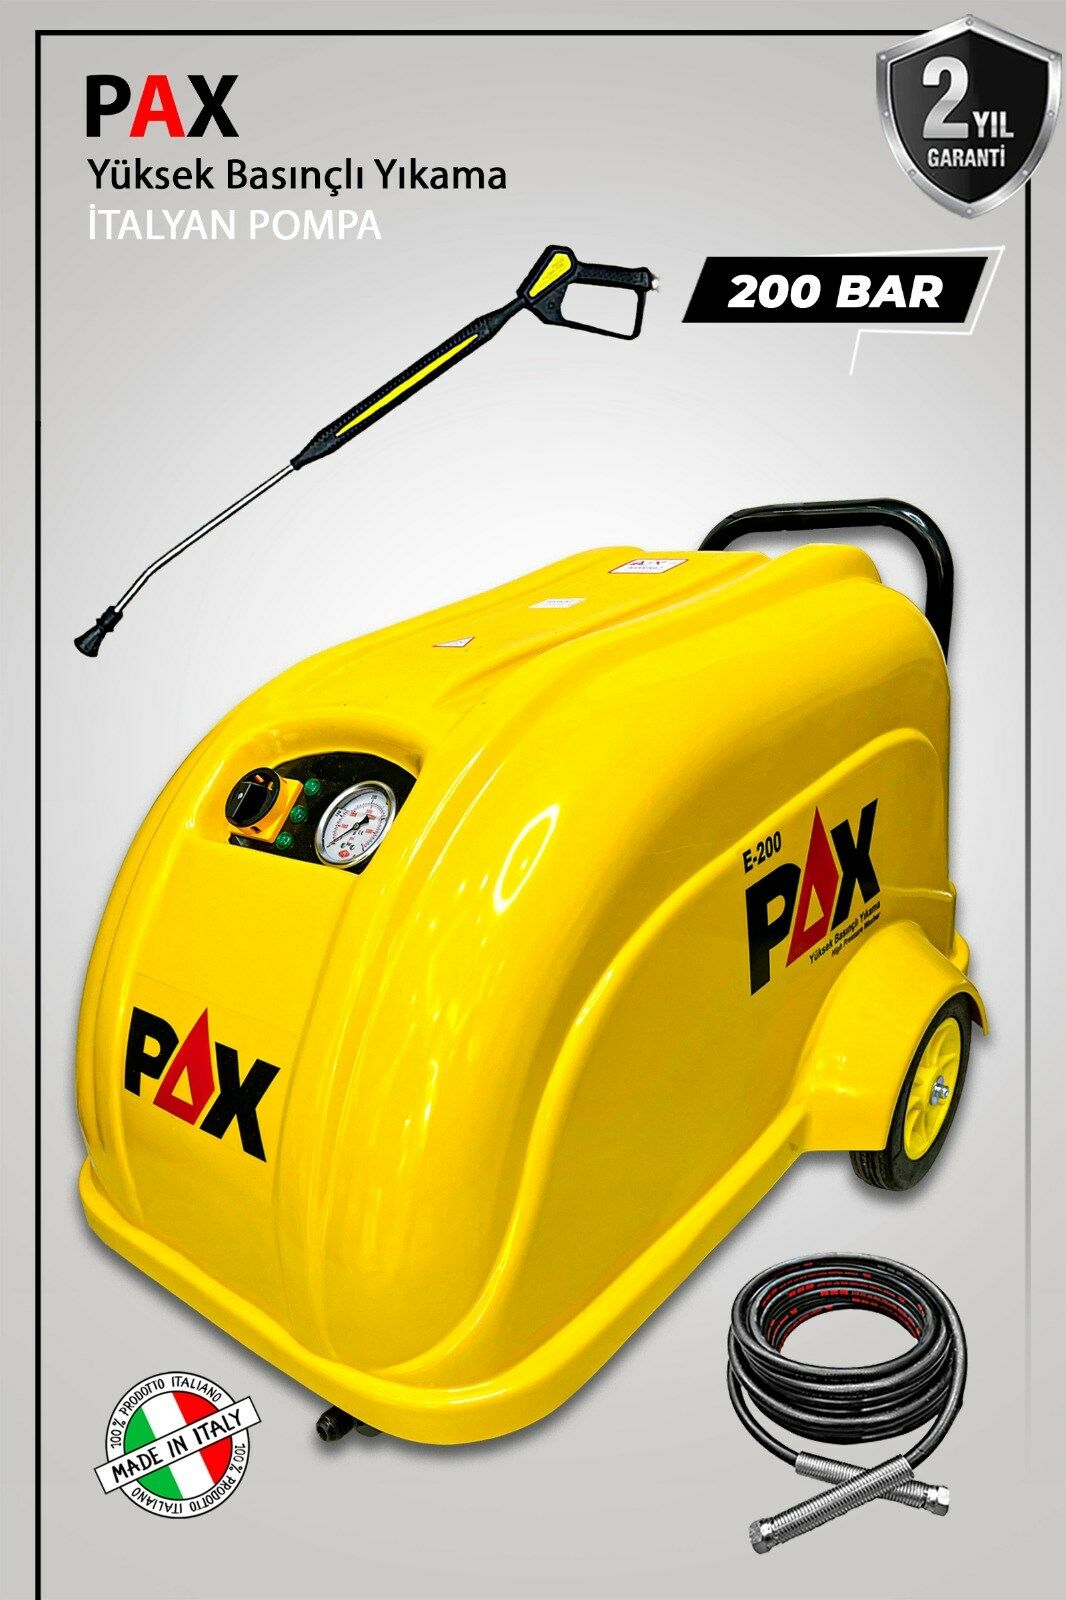 Pax 200 Bar Yüksek Basınçlı Oto Yıkama Makinası İtalyan Pompa Trifaze